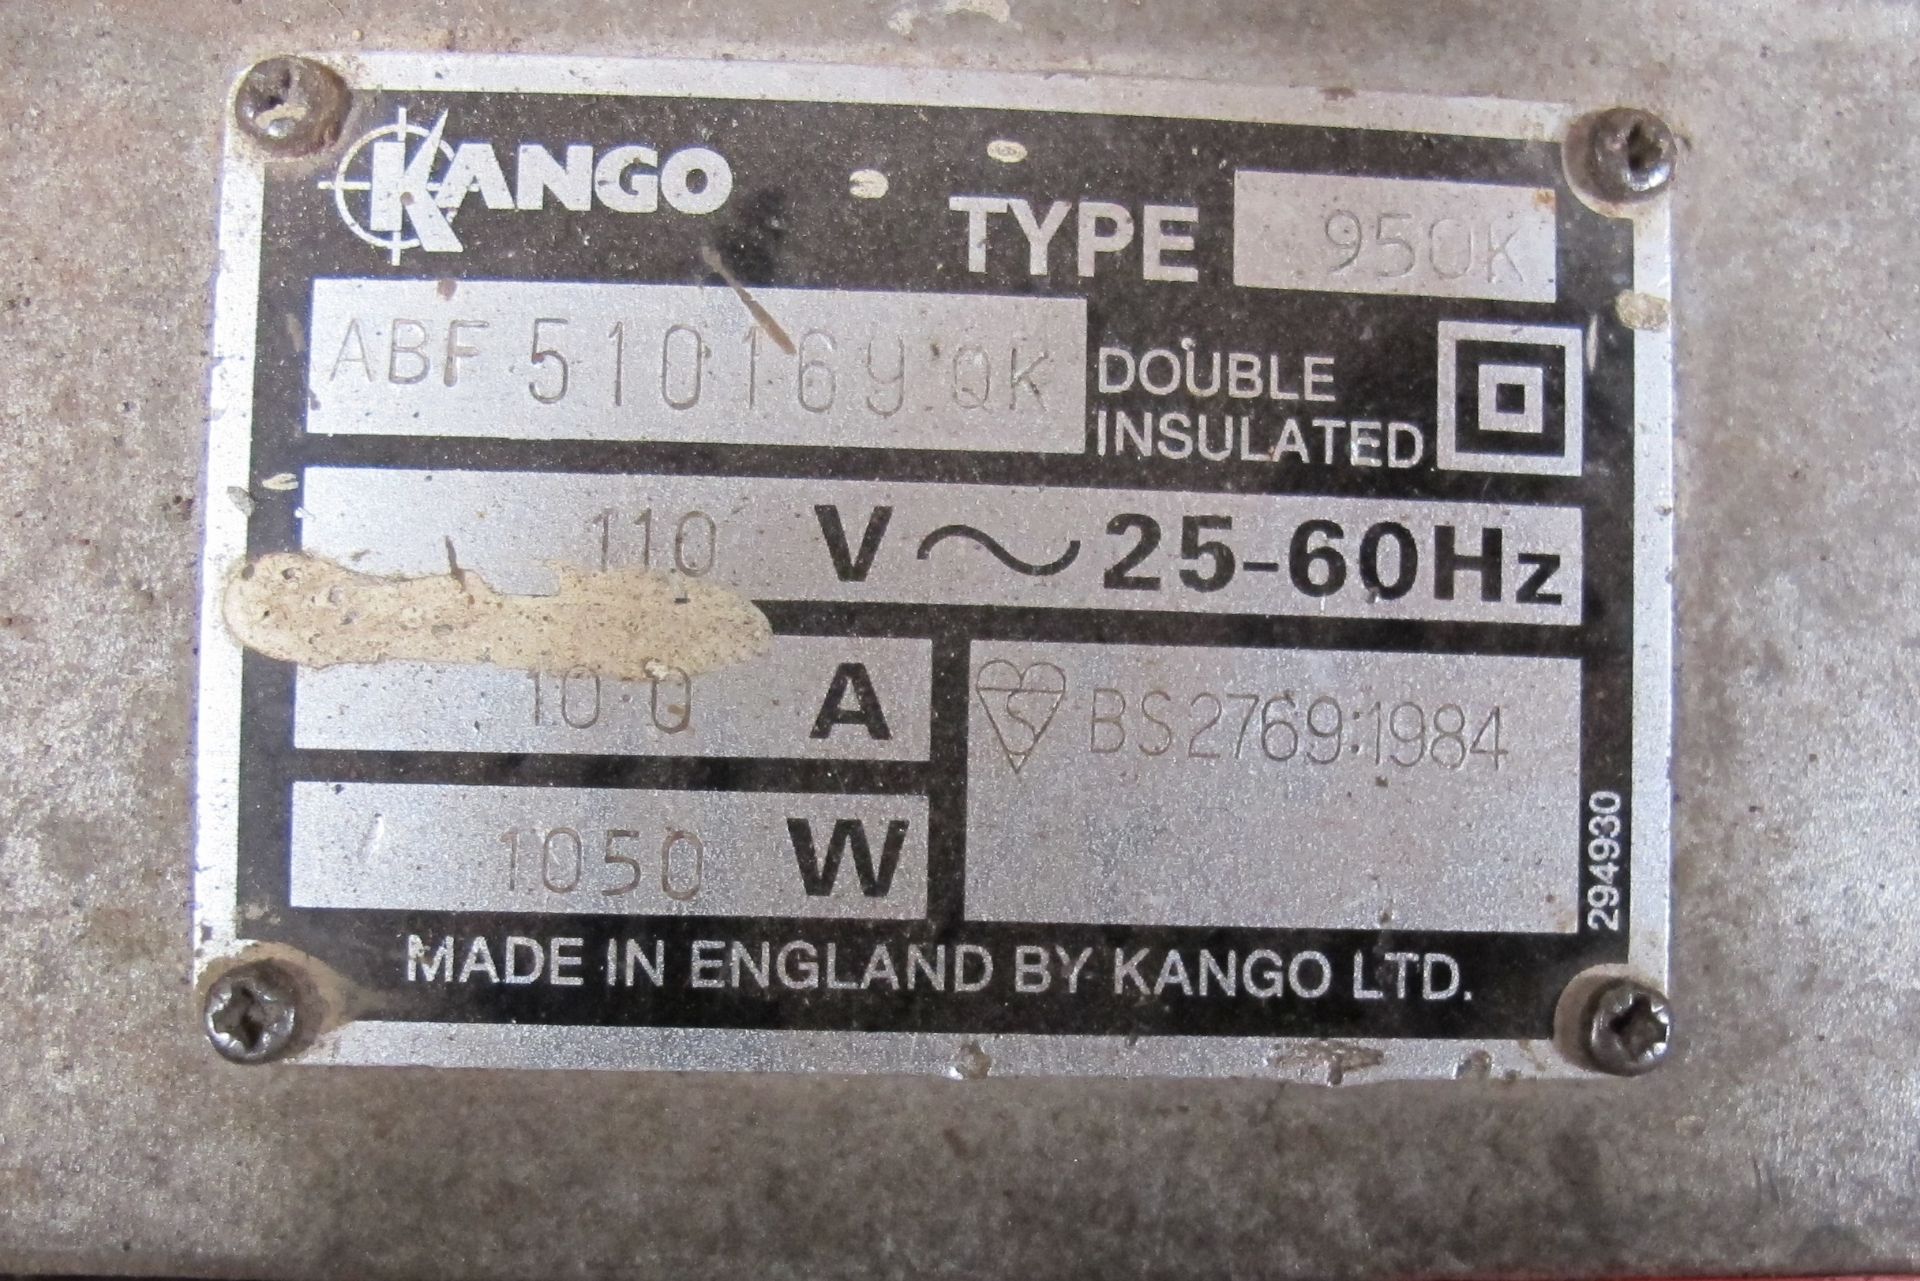 Kango 950K breaker, 110V - Image 2 of 2